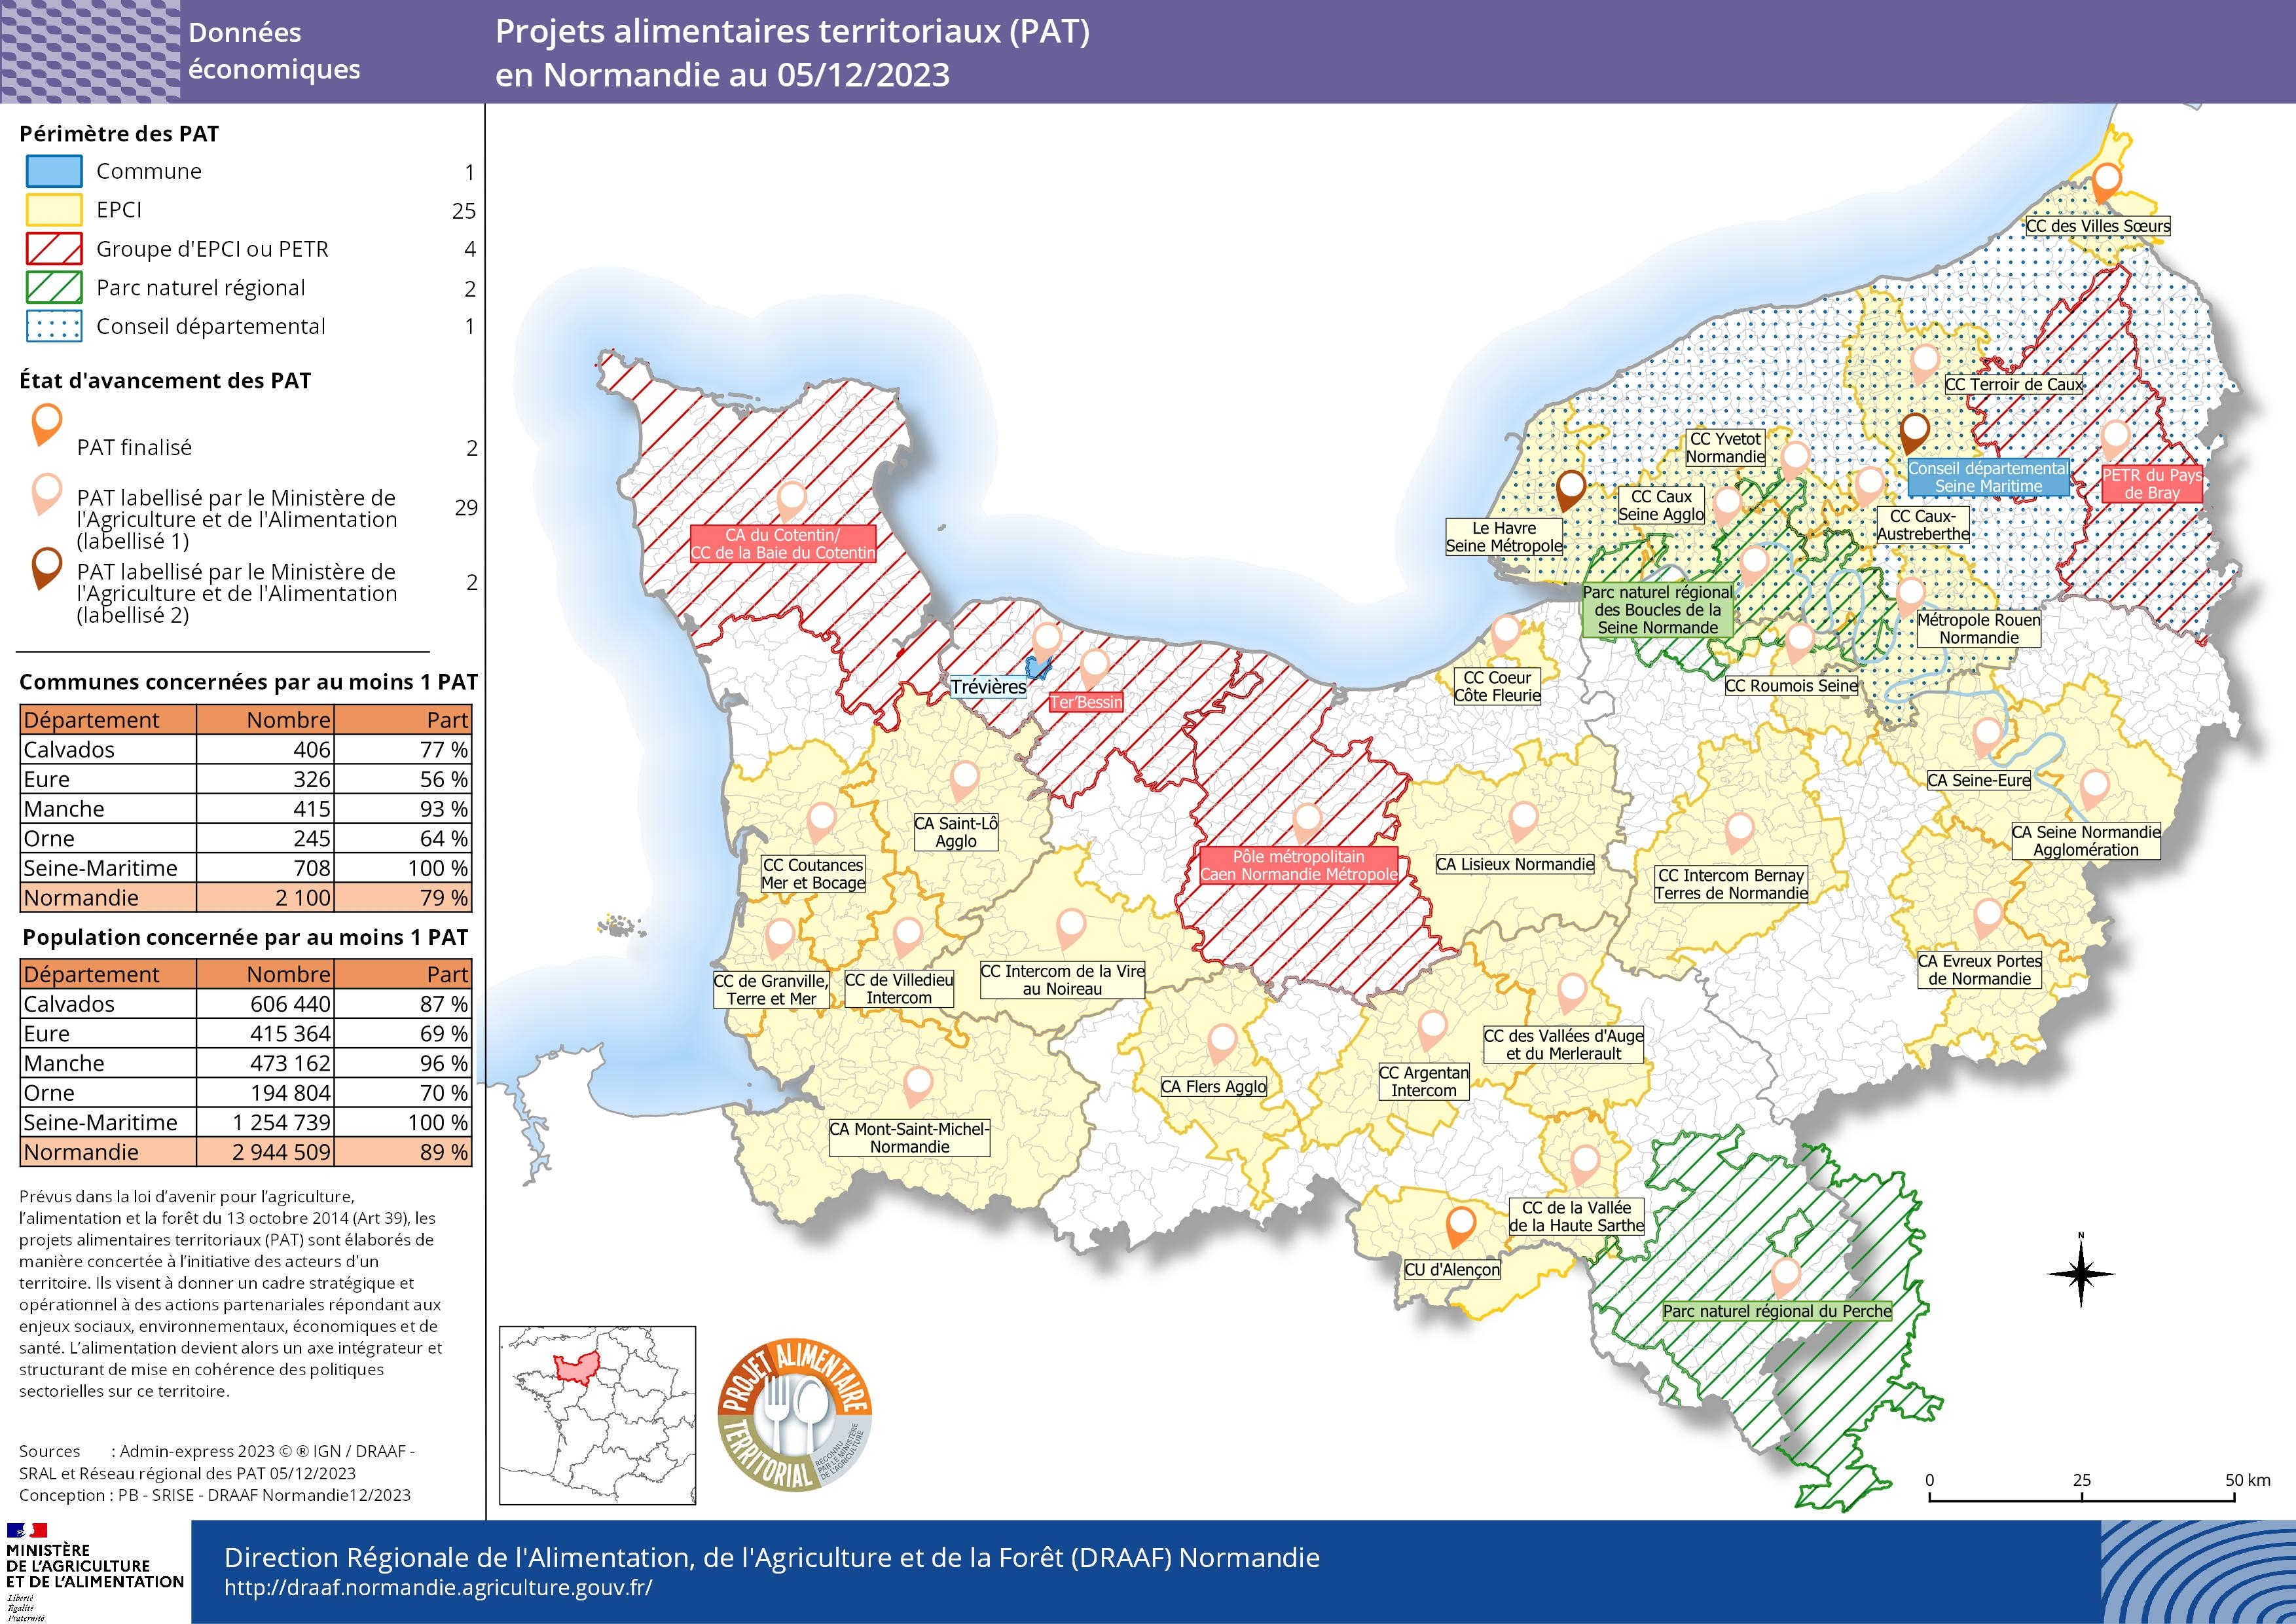 carte représentant les projets alimentaires territoriaux (PAT) en Normandie au 05/12/2023